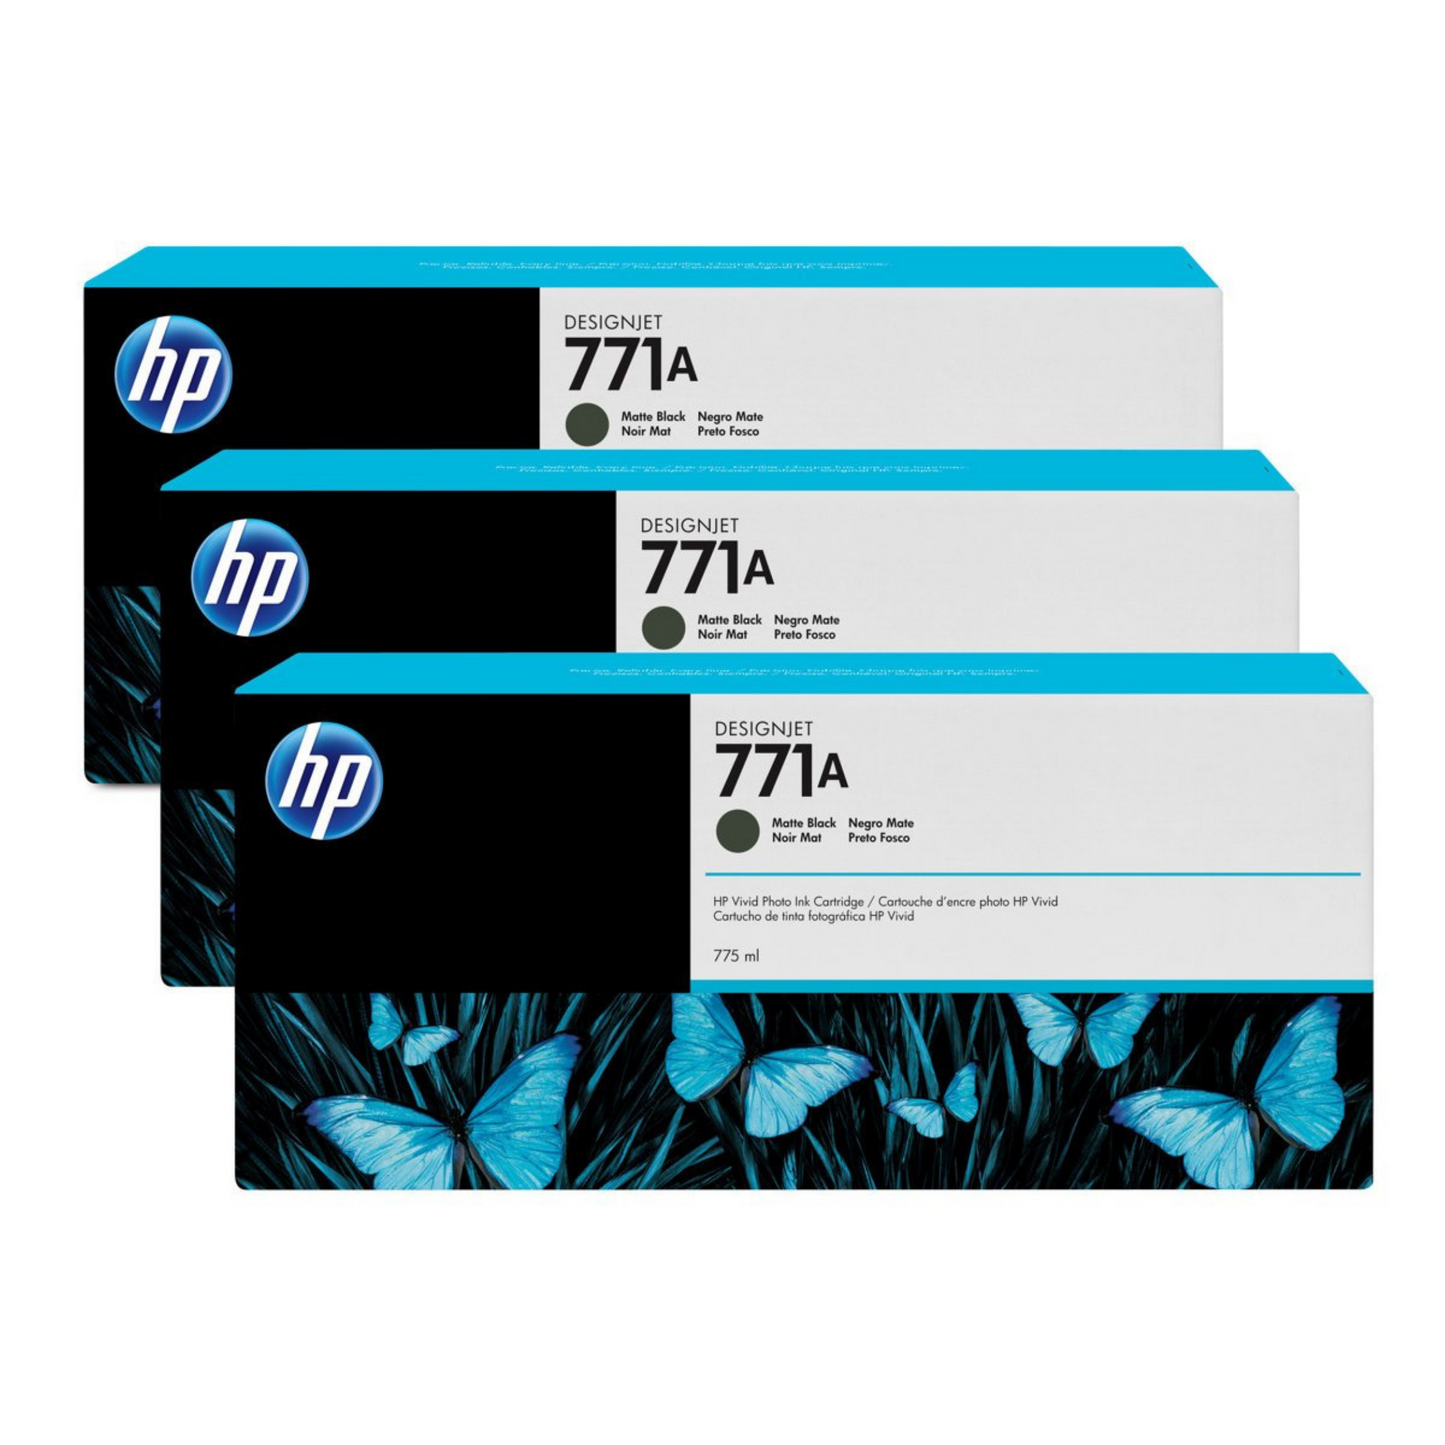 HP 771A CARTUCHO NEGRO MATE TRI-PACK DESIGNJET 775ML B6Y39A